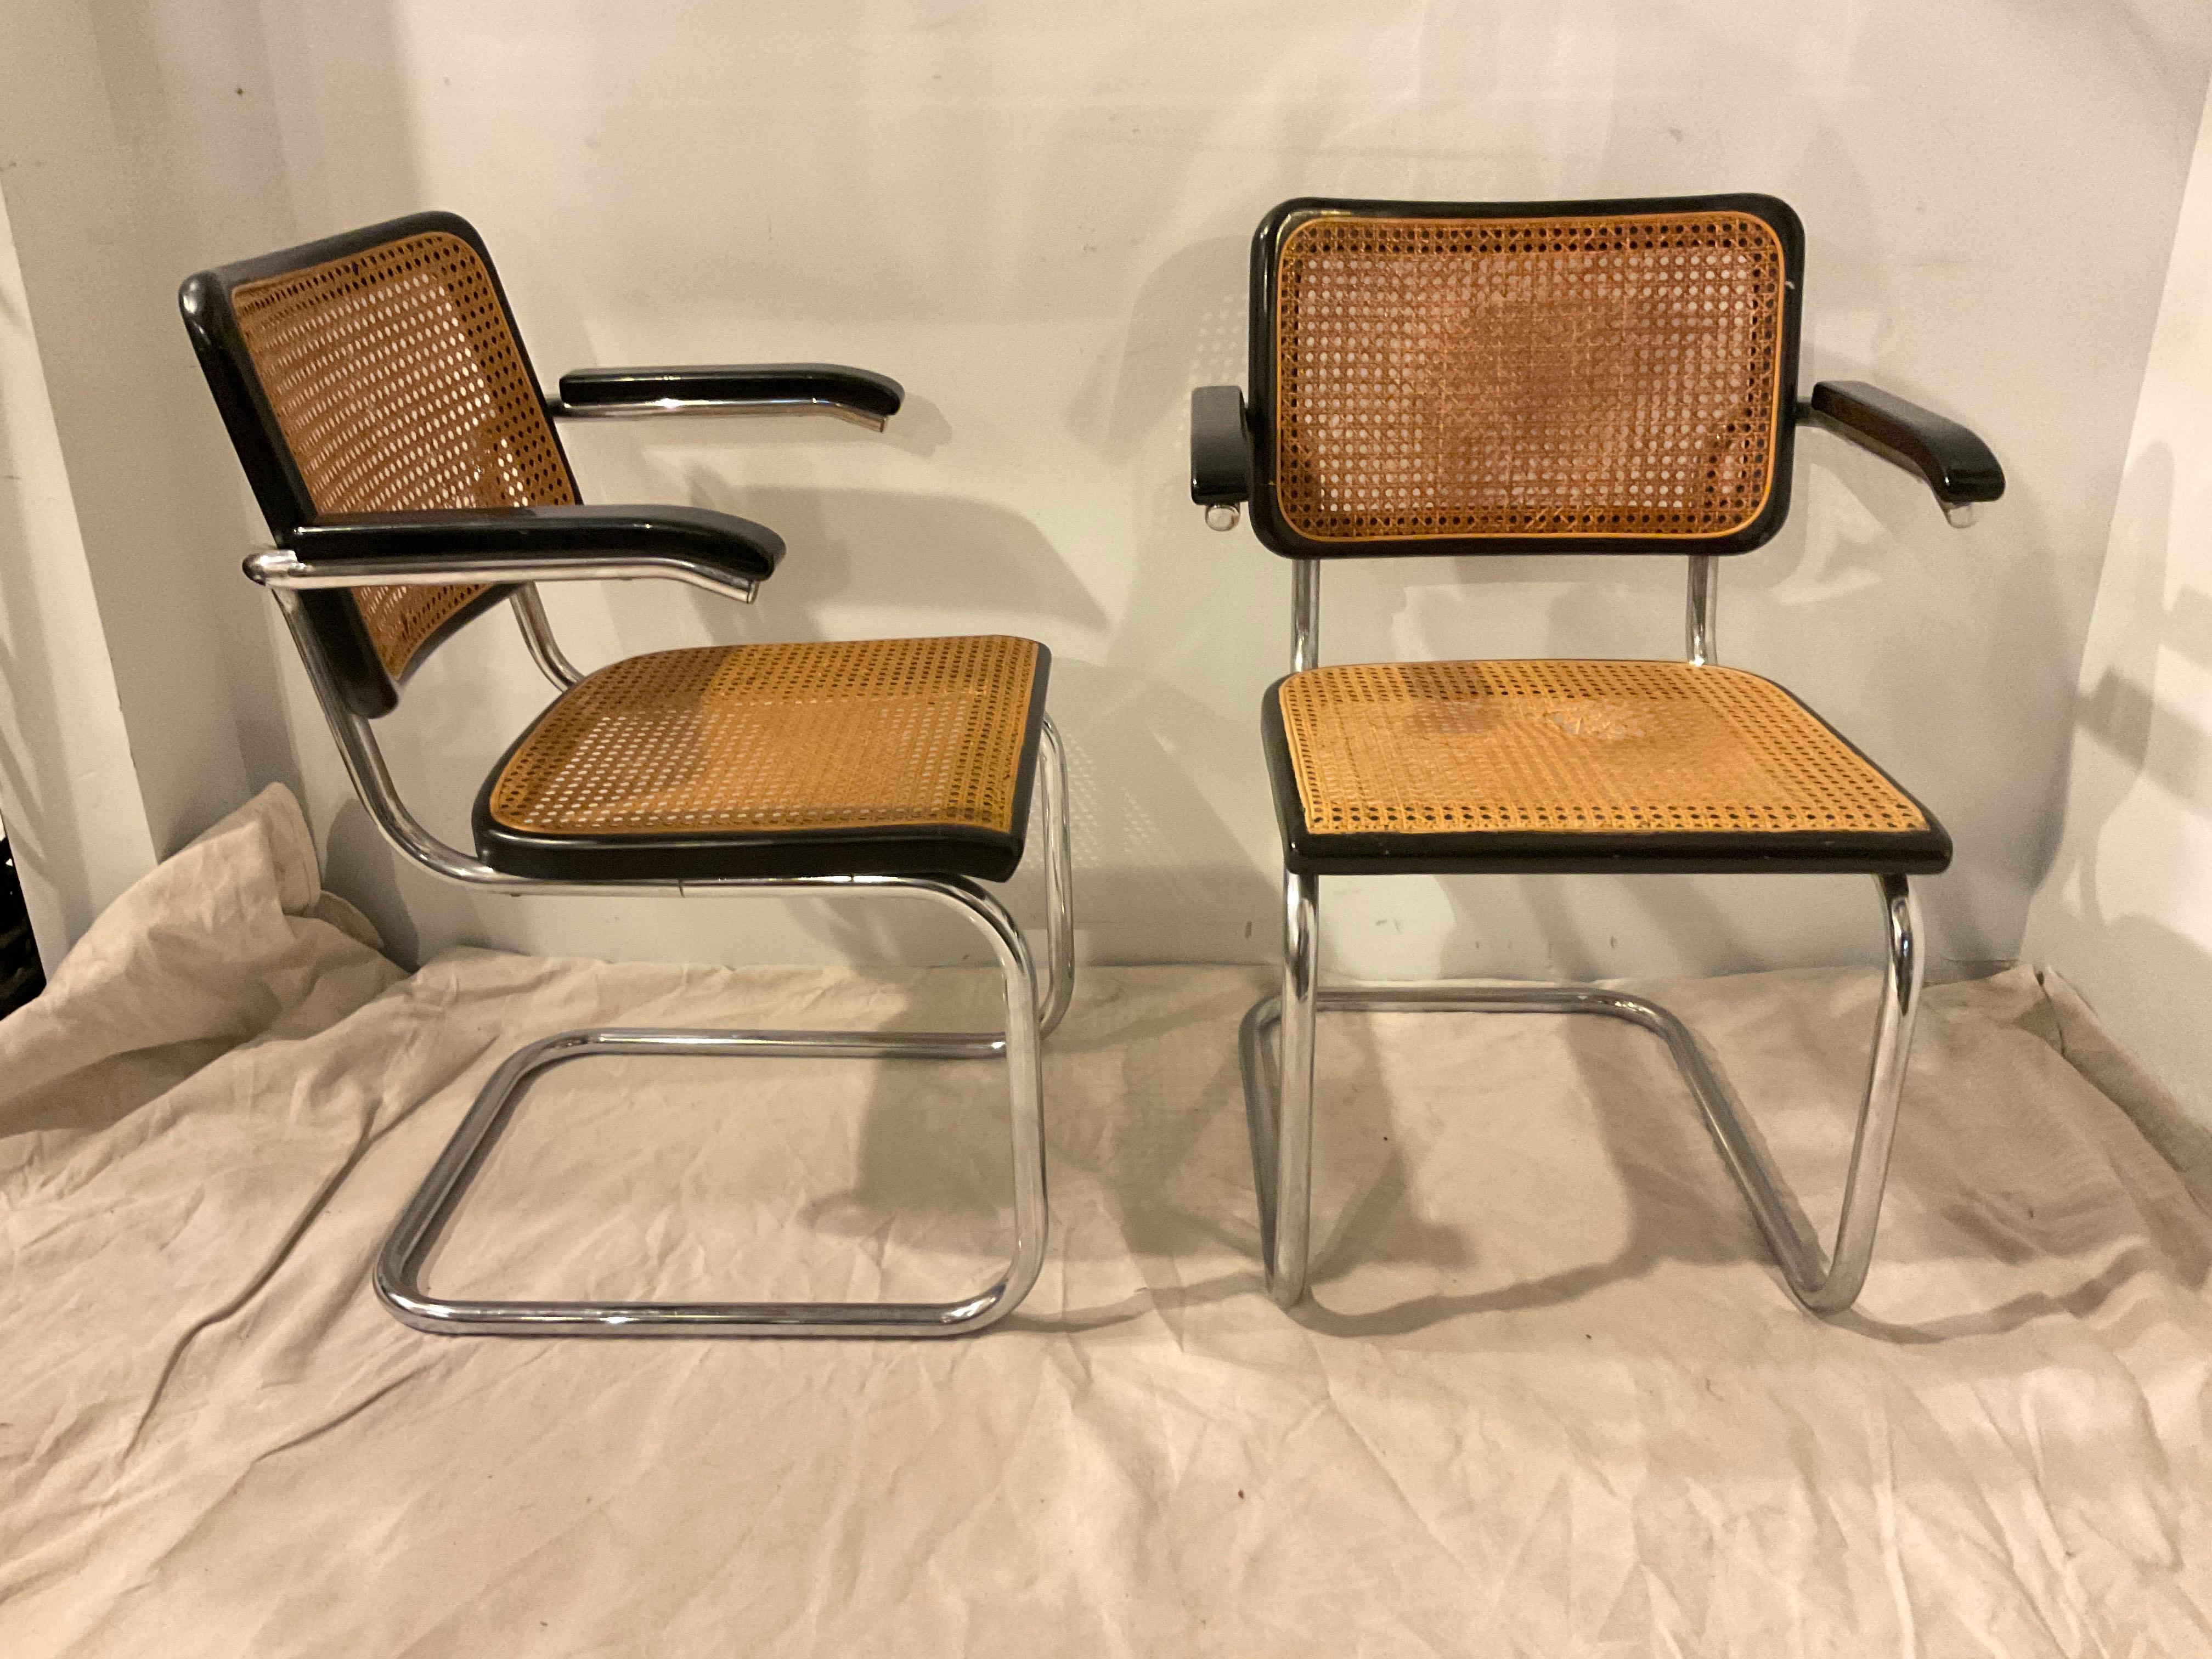 Paire de chaises Cesca des années 1960 par Marcel Breuer pour Thonet.
Une partie de la bastonnade est correcte, les trois autres parties ont besoin d'une nouvelle bastonnade.